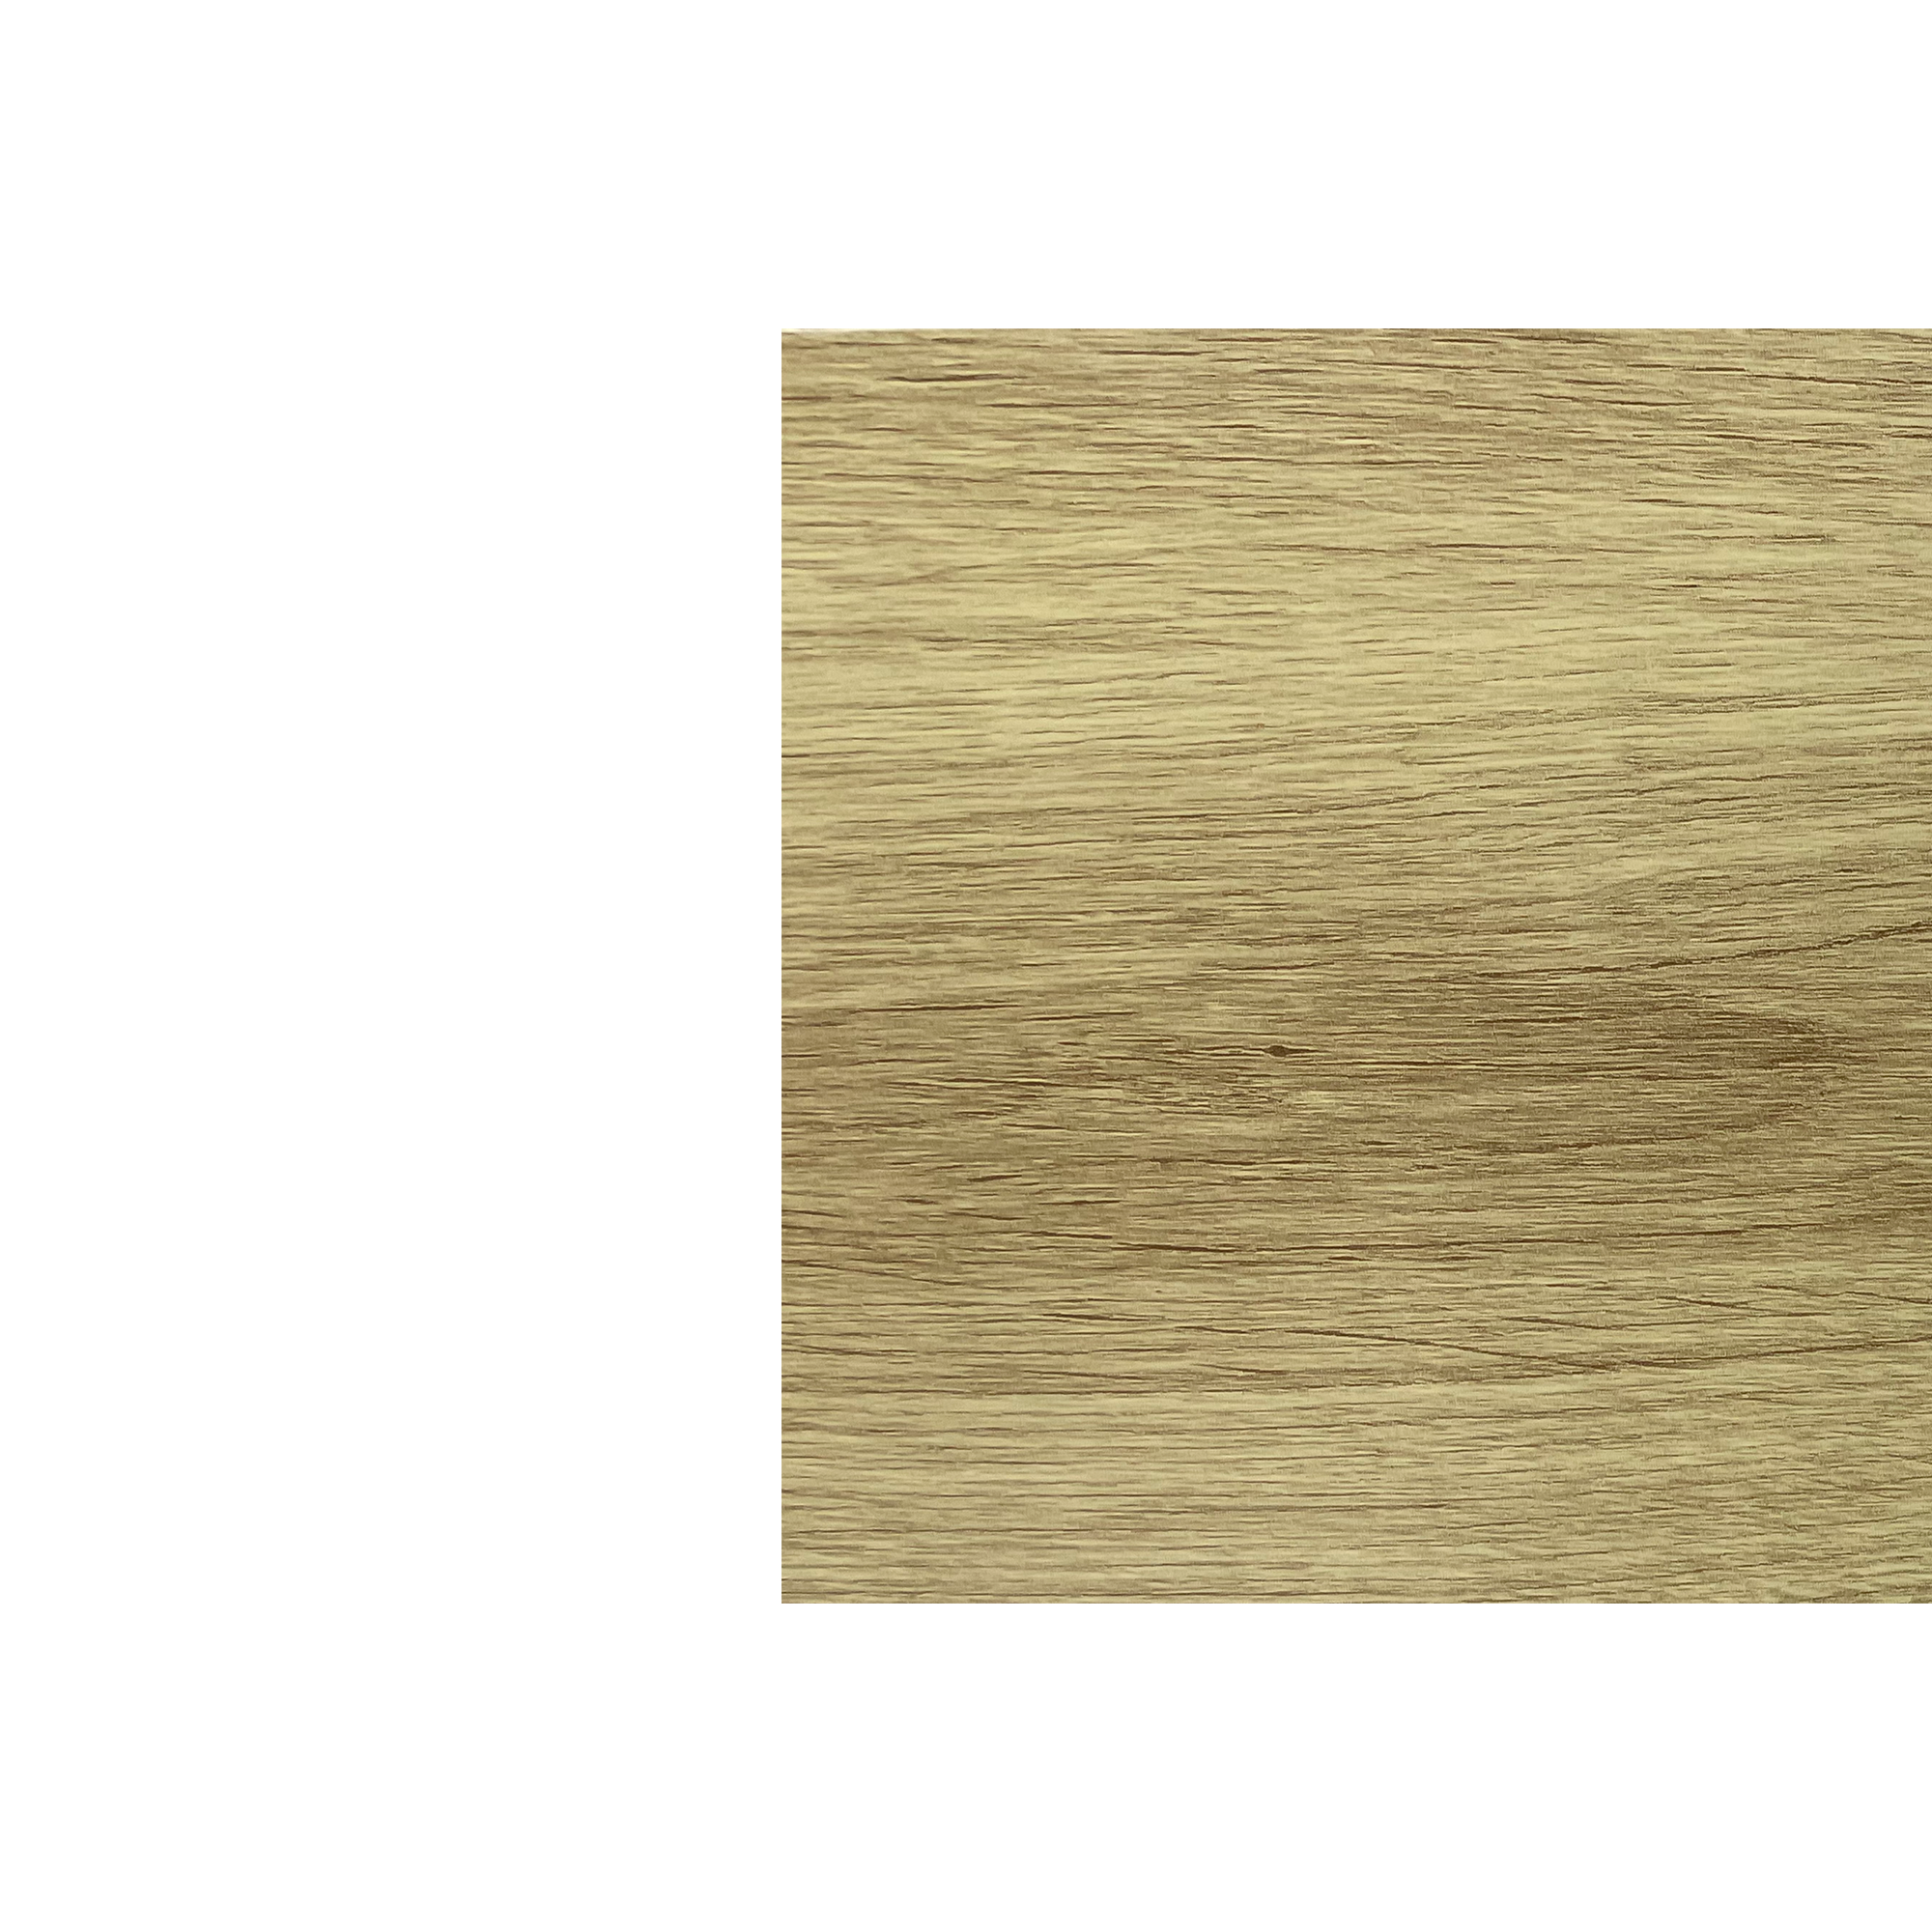 Планка угла внутреннего сложного Брусnika Золотая текила 0,45 мм Printech Доборные элементы для сайдинга Кровля Сервис